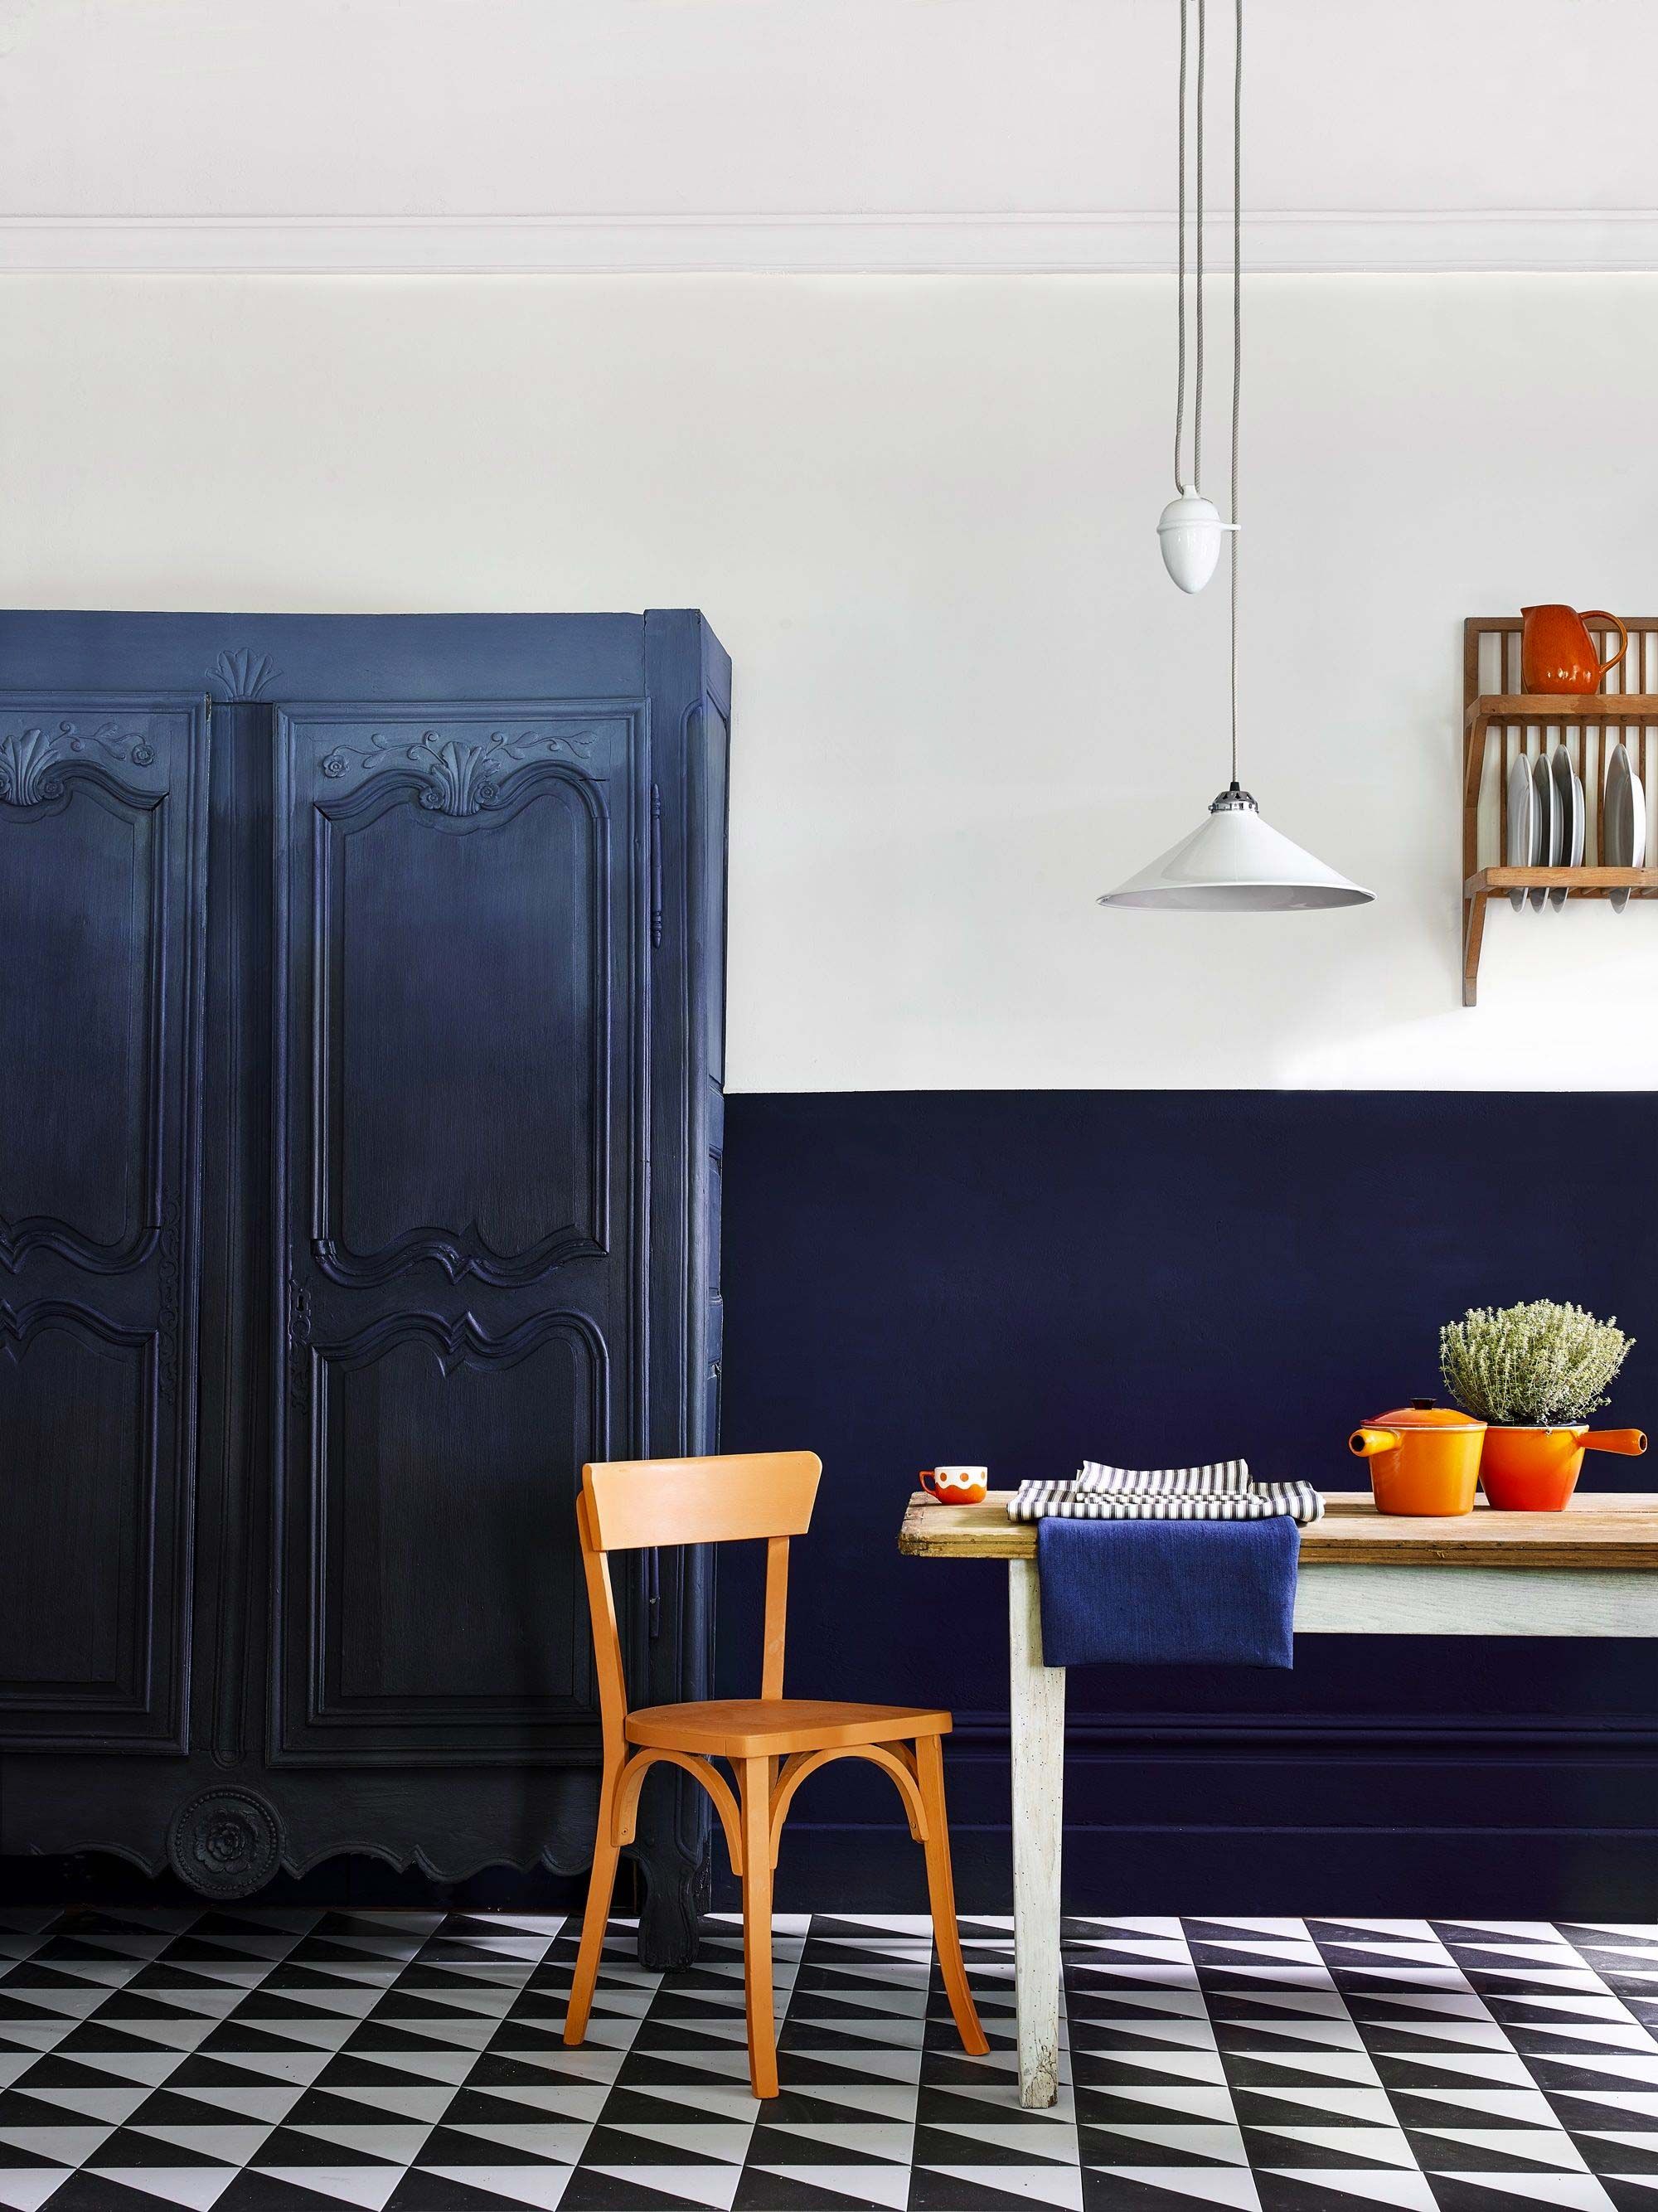 Cómo decorar tu casa en azul. Uno de los colores tendencia